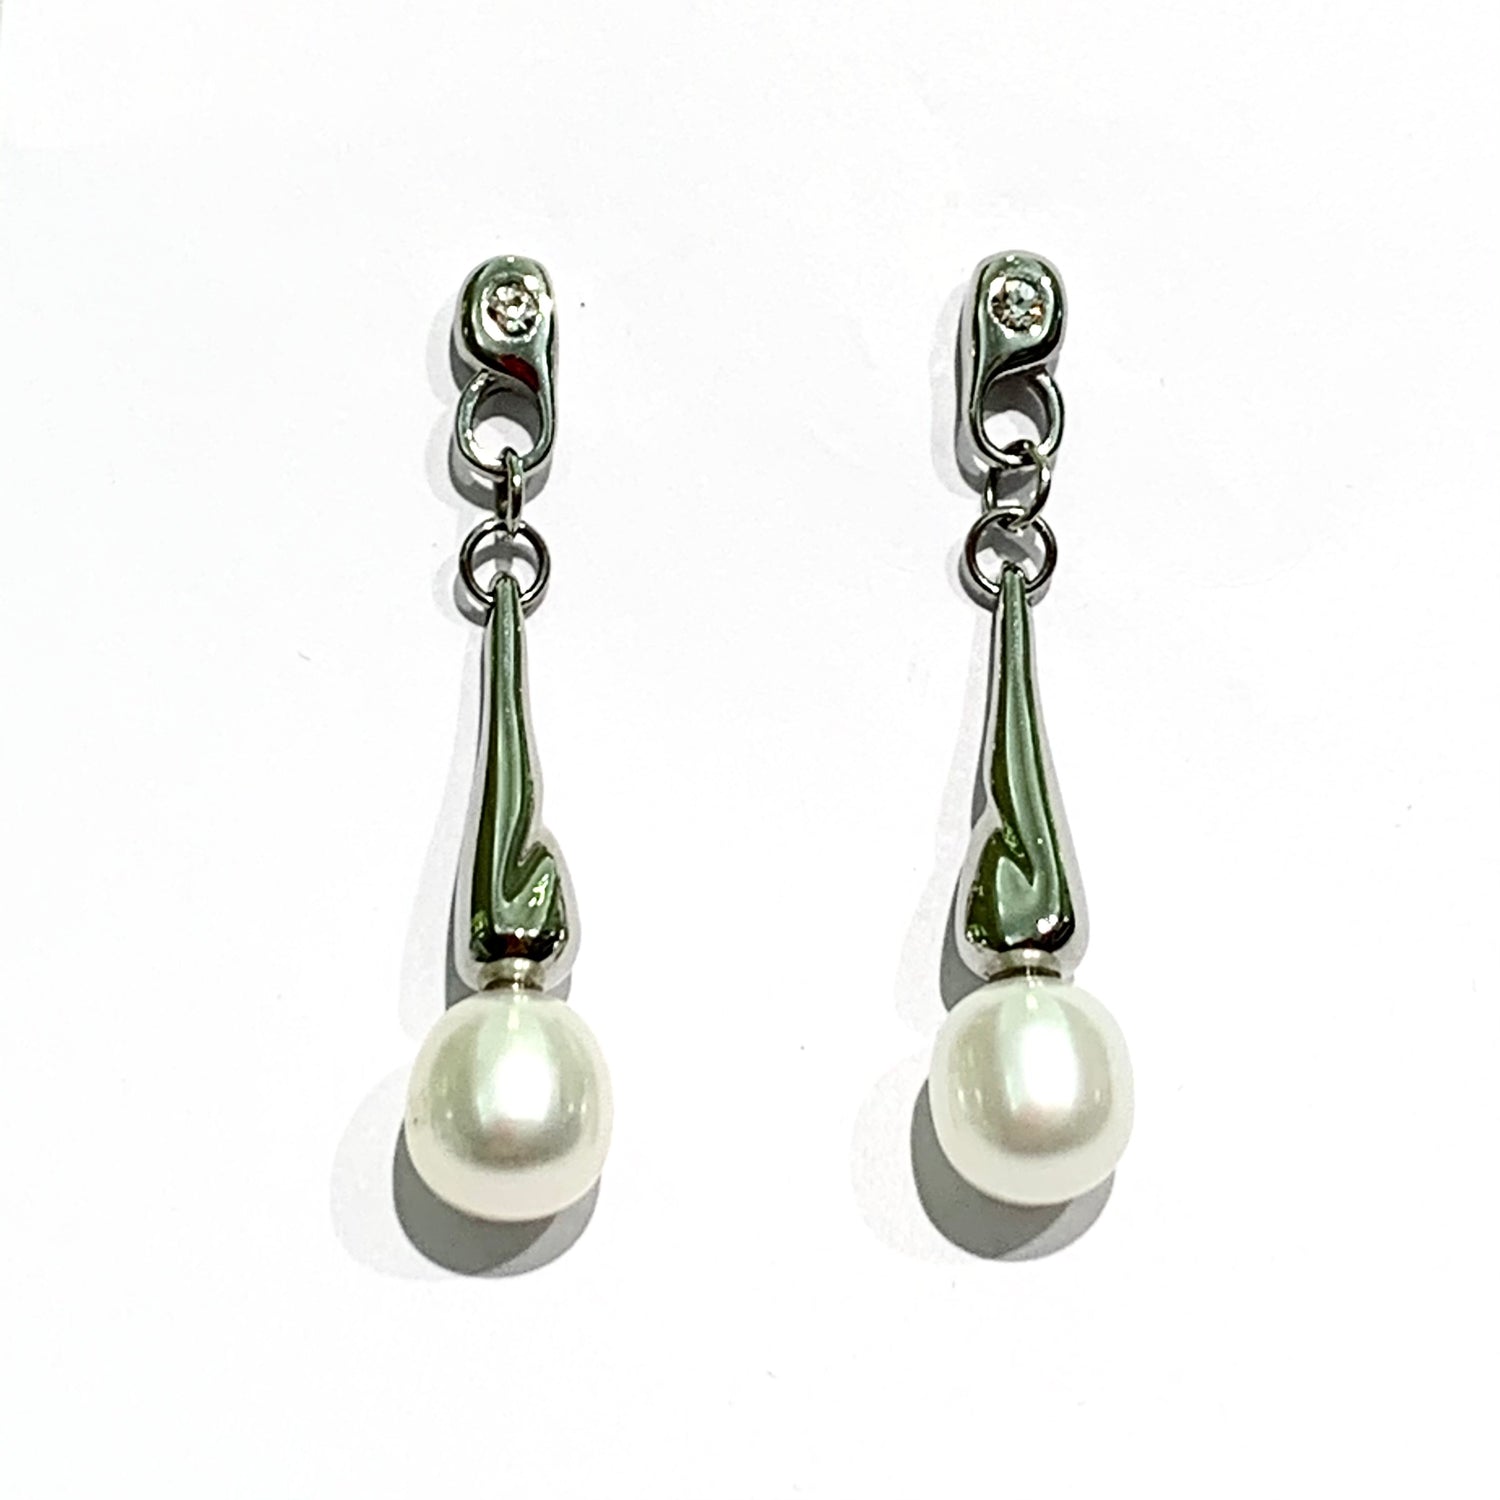 Orecchini pendenti in bijoux con perle coltivate.  Lunghezza totale 4 cm.  Dimensione perla 0,7 cm.  Chiusura con farfalline.  Spedizione gratuita con confezione regalo. 